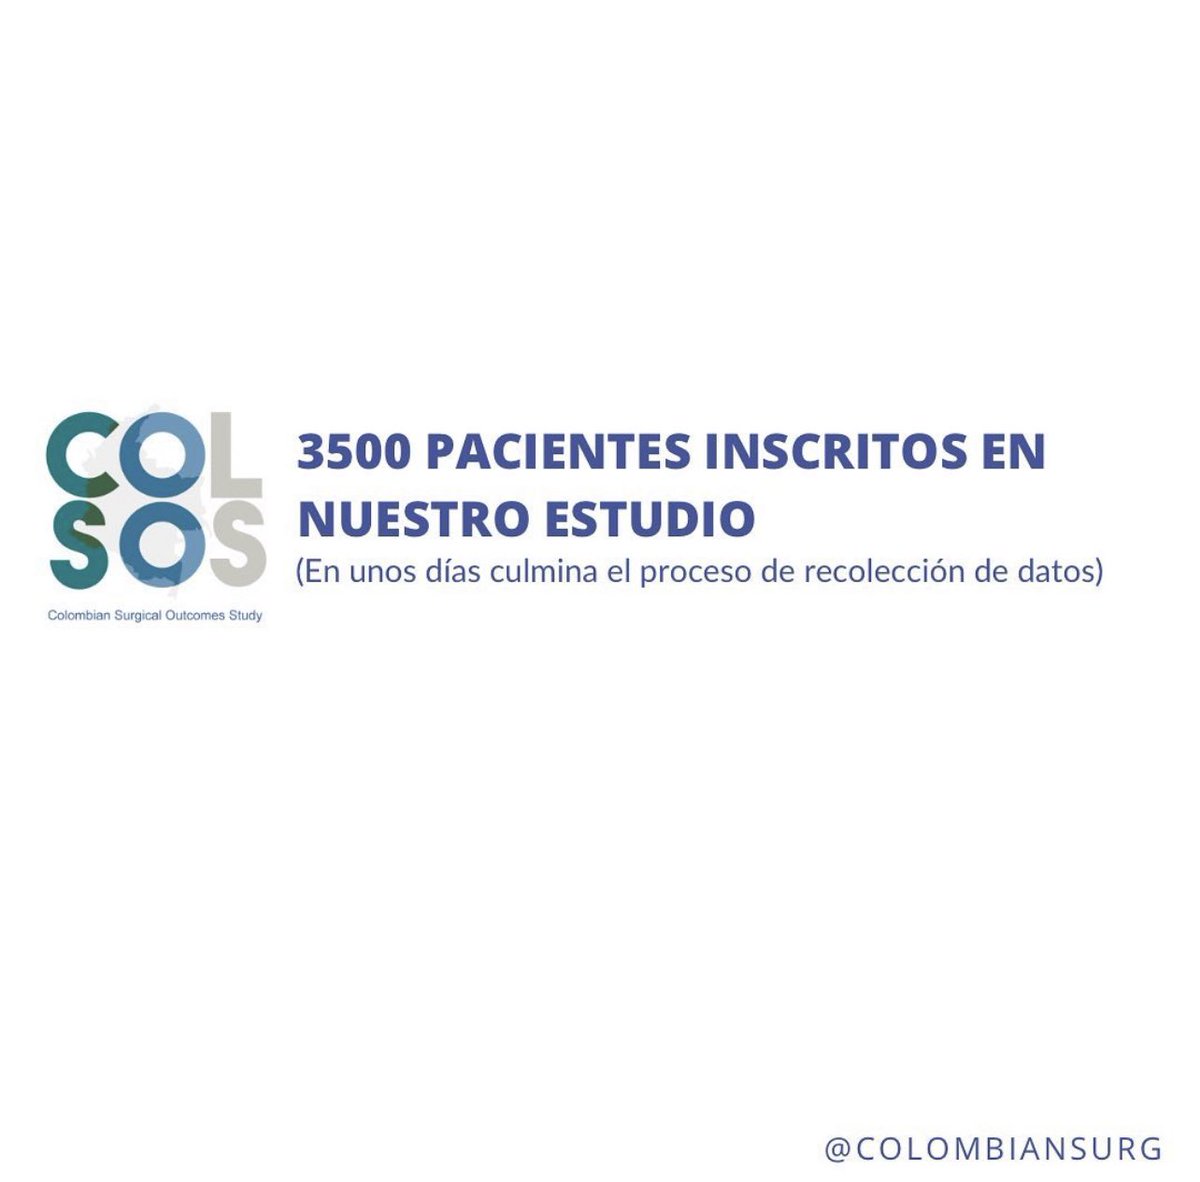 Quedan pocos días para culminar el proceso de recolección de datos! #SoMe4Surgery  #investigacionquirugica #AsColCx2020 #SoMe4IQLatAm #GlobalSurgery #ColombianSurg #collaborativeresearch